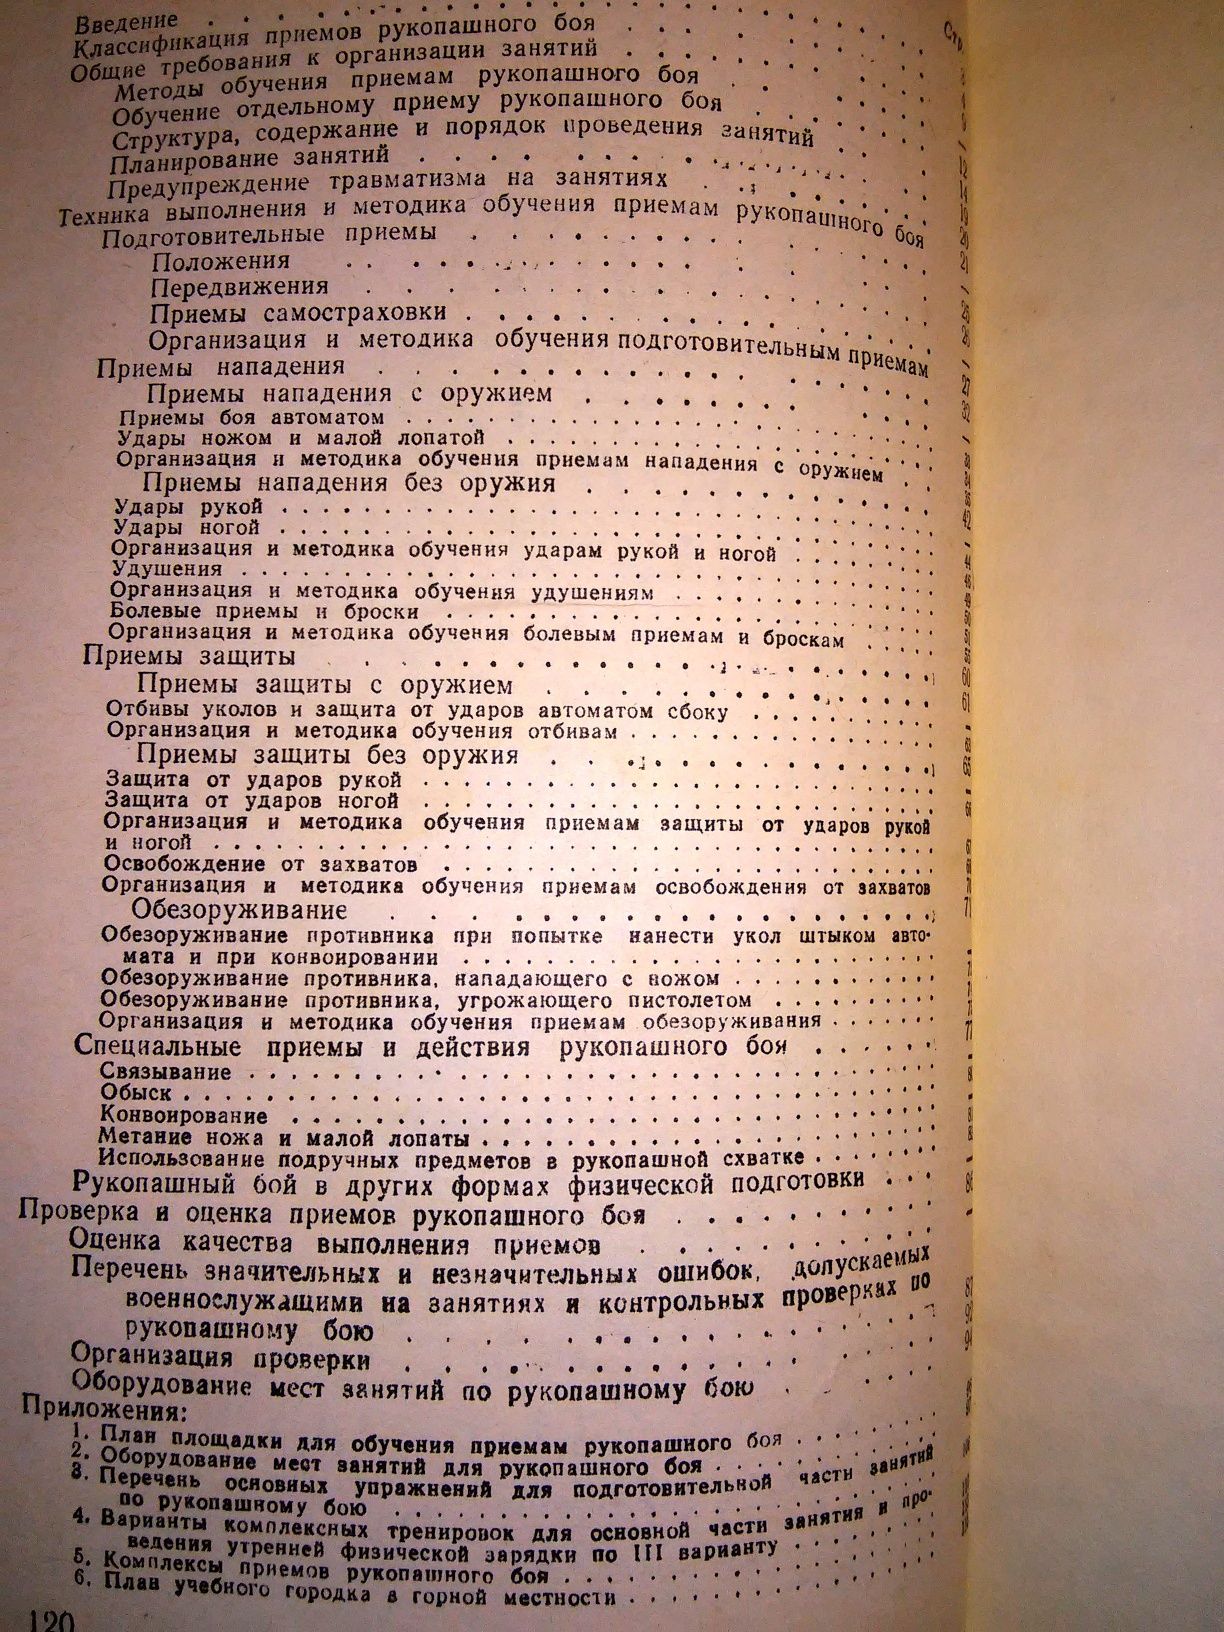 Старченков Рукопашный бой Учебно-методическое пособие 1985